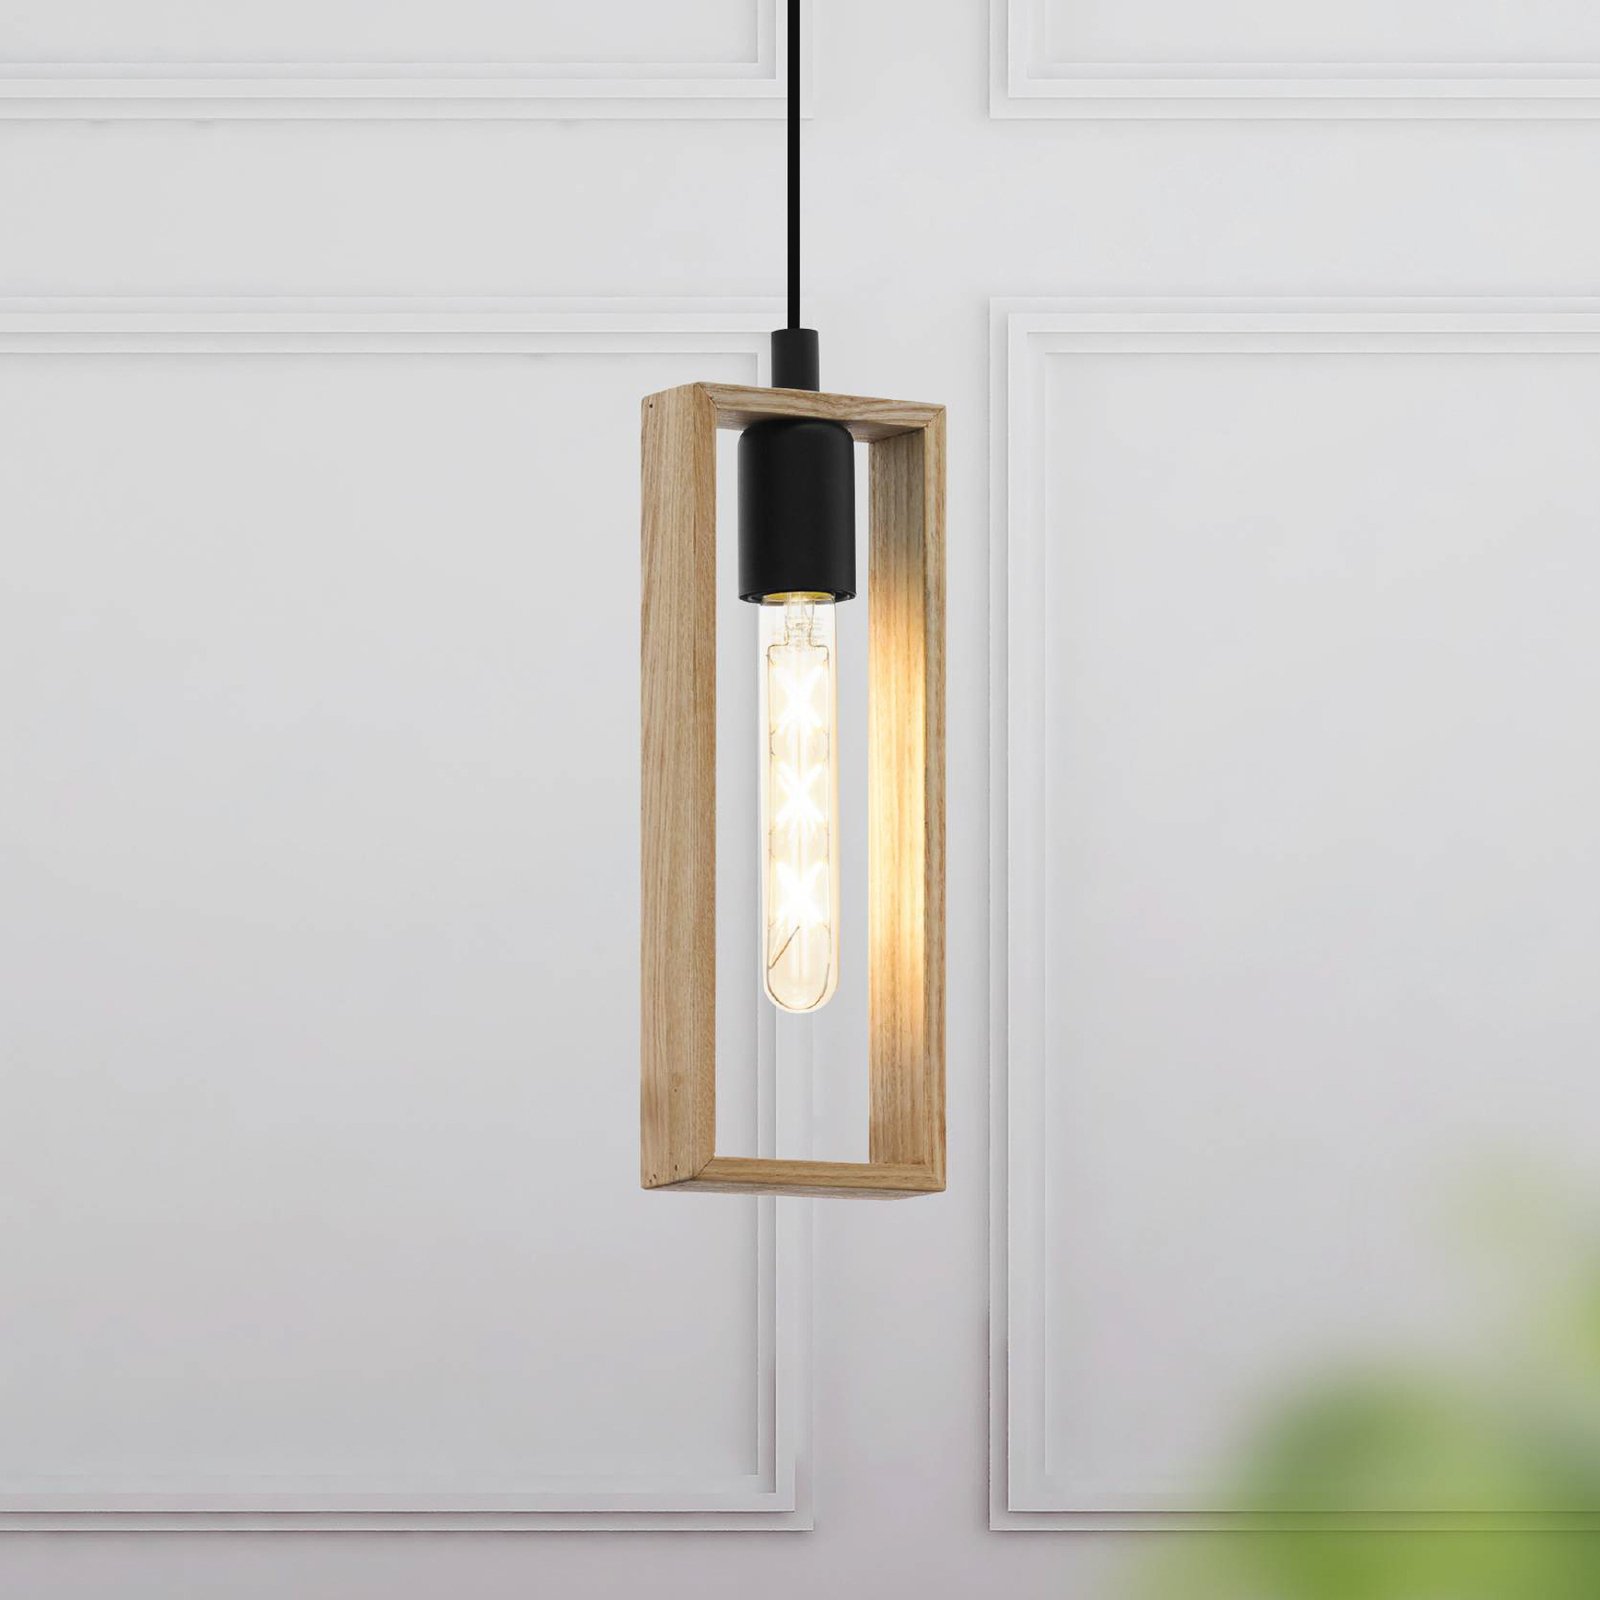 Hanglamp Littleton, zwart/bruin, 1-lamp